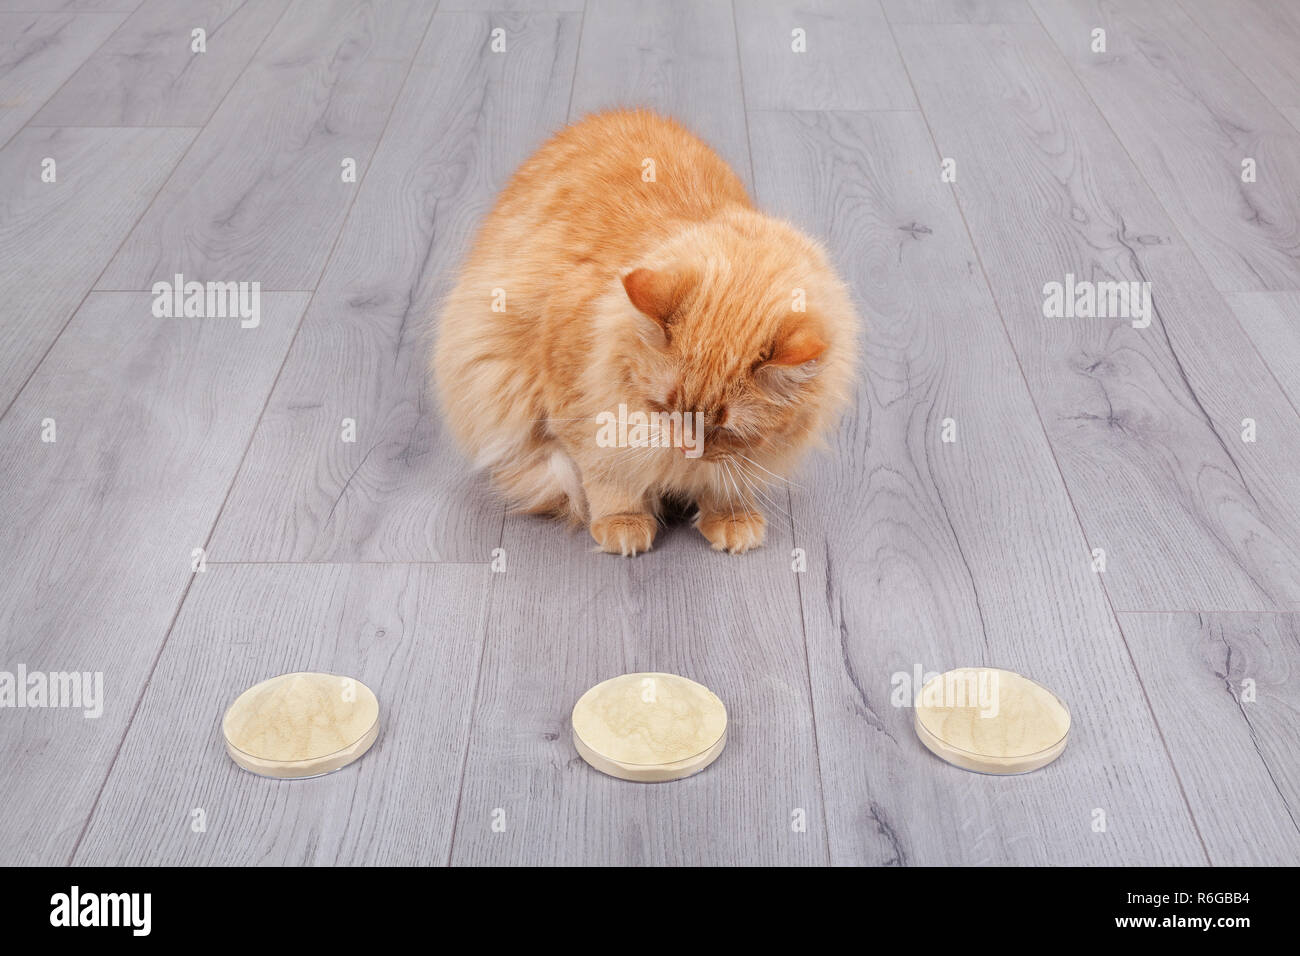 Red cat wählen trockenhefe von Petri cup extrahieren Stockfoto